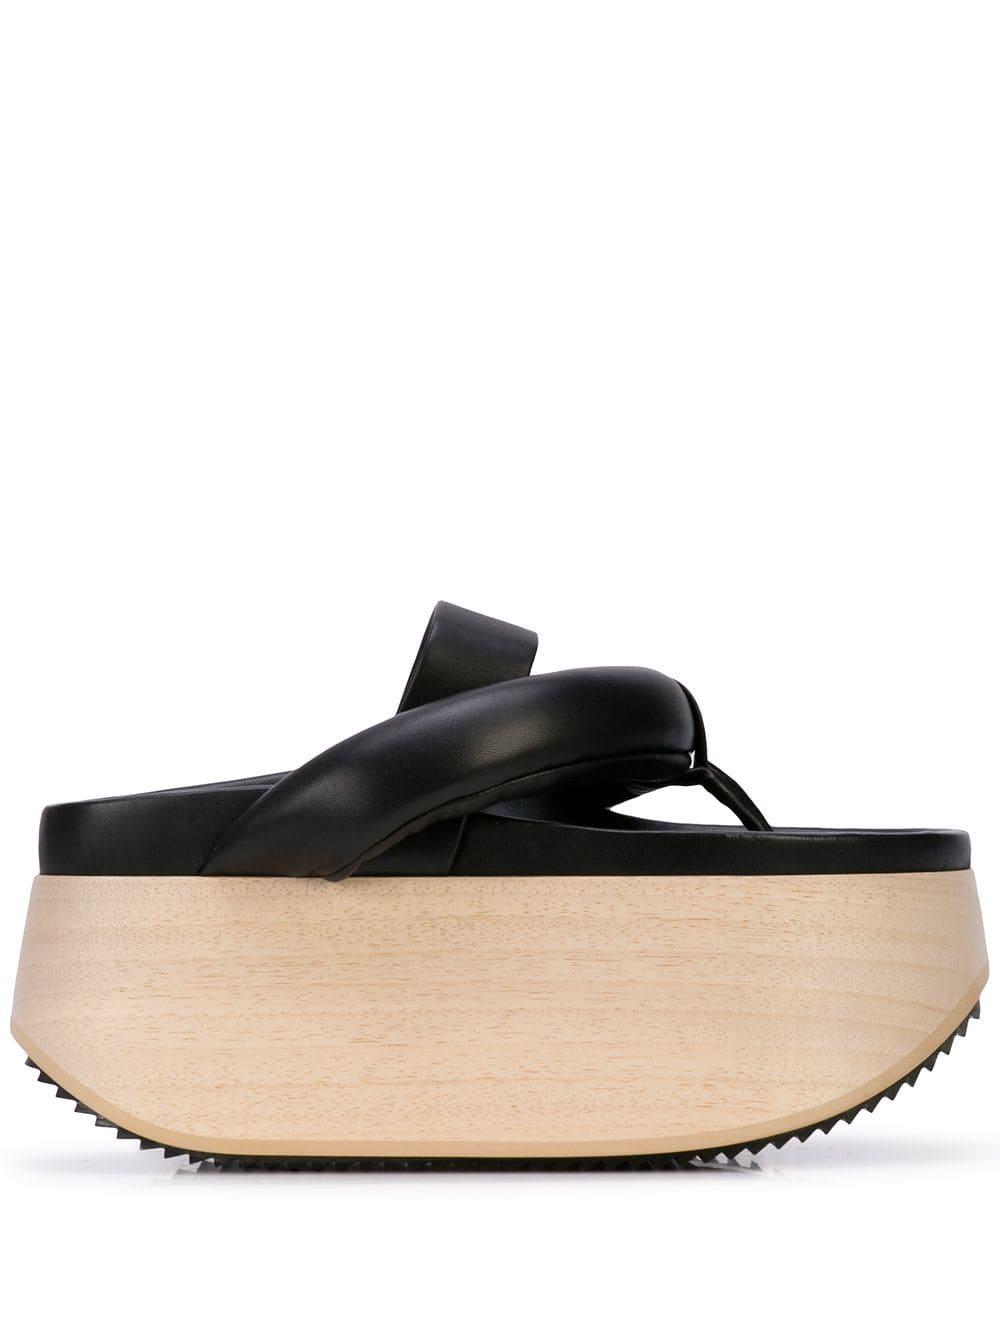 Jil Sander Leather Platform Sandals in Black | Lyst